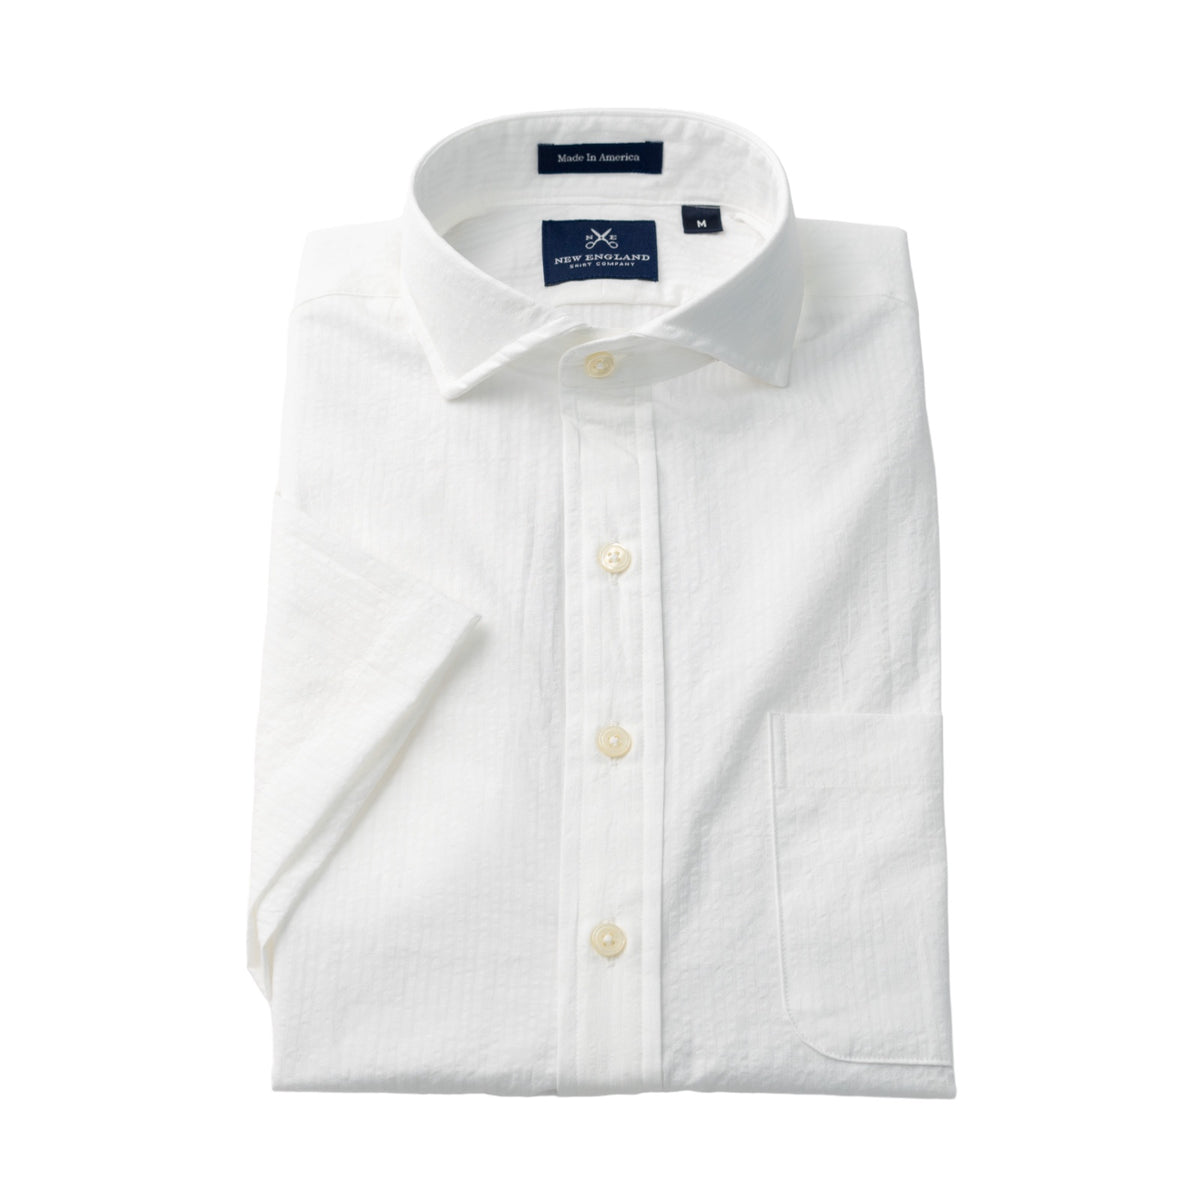 Short Sleeve Popover White Seersucker Sport Shirt